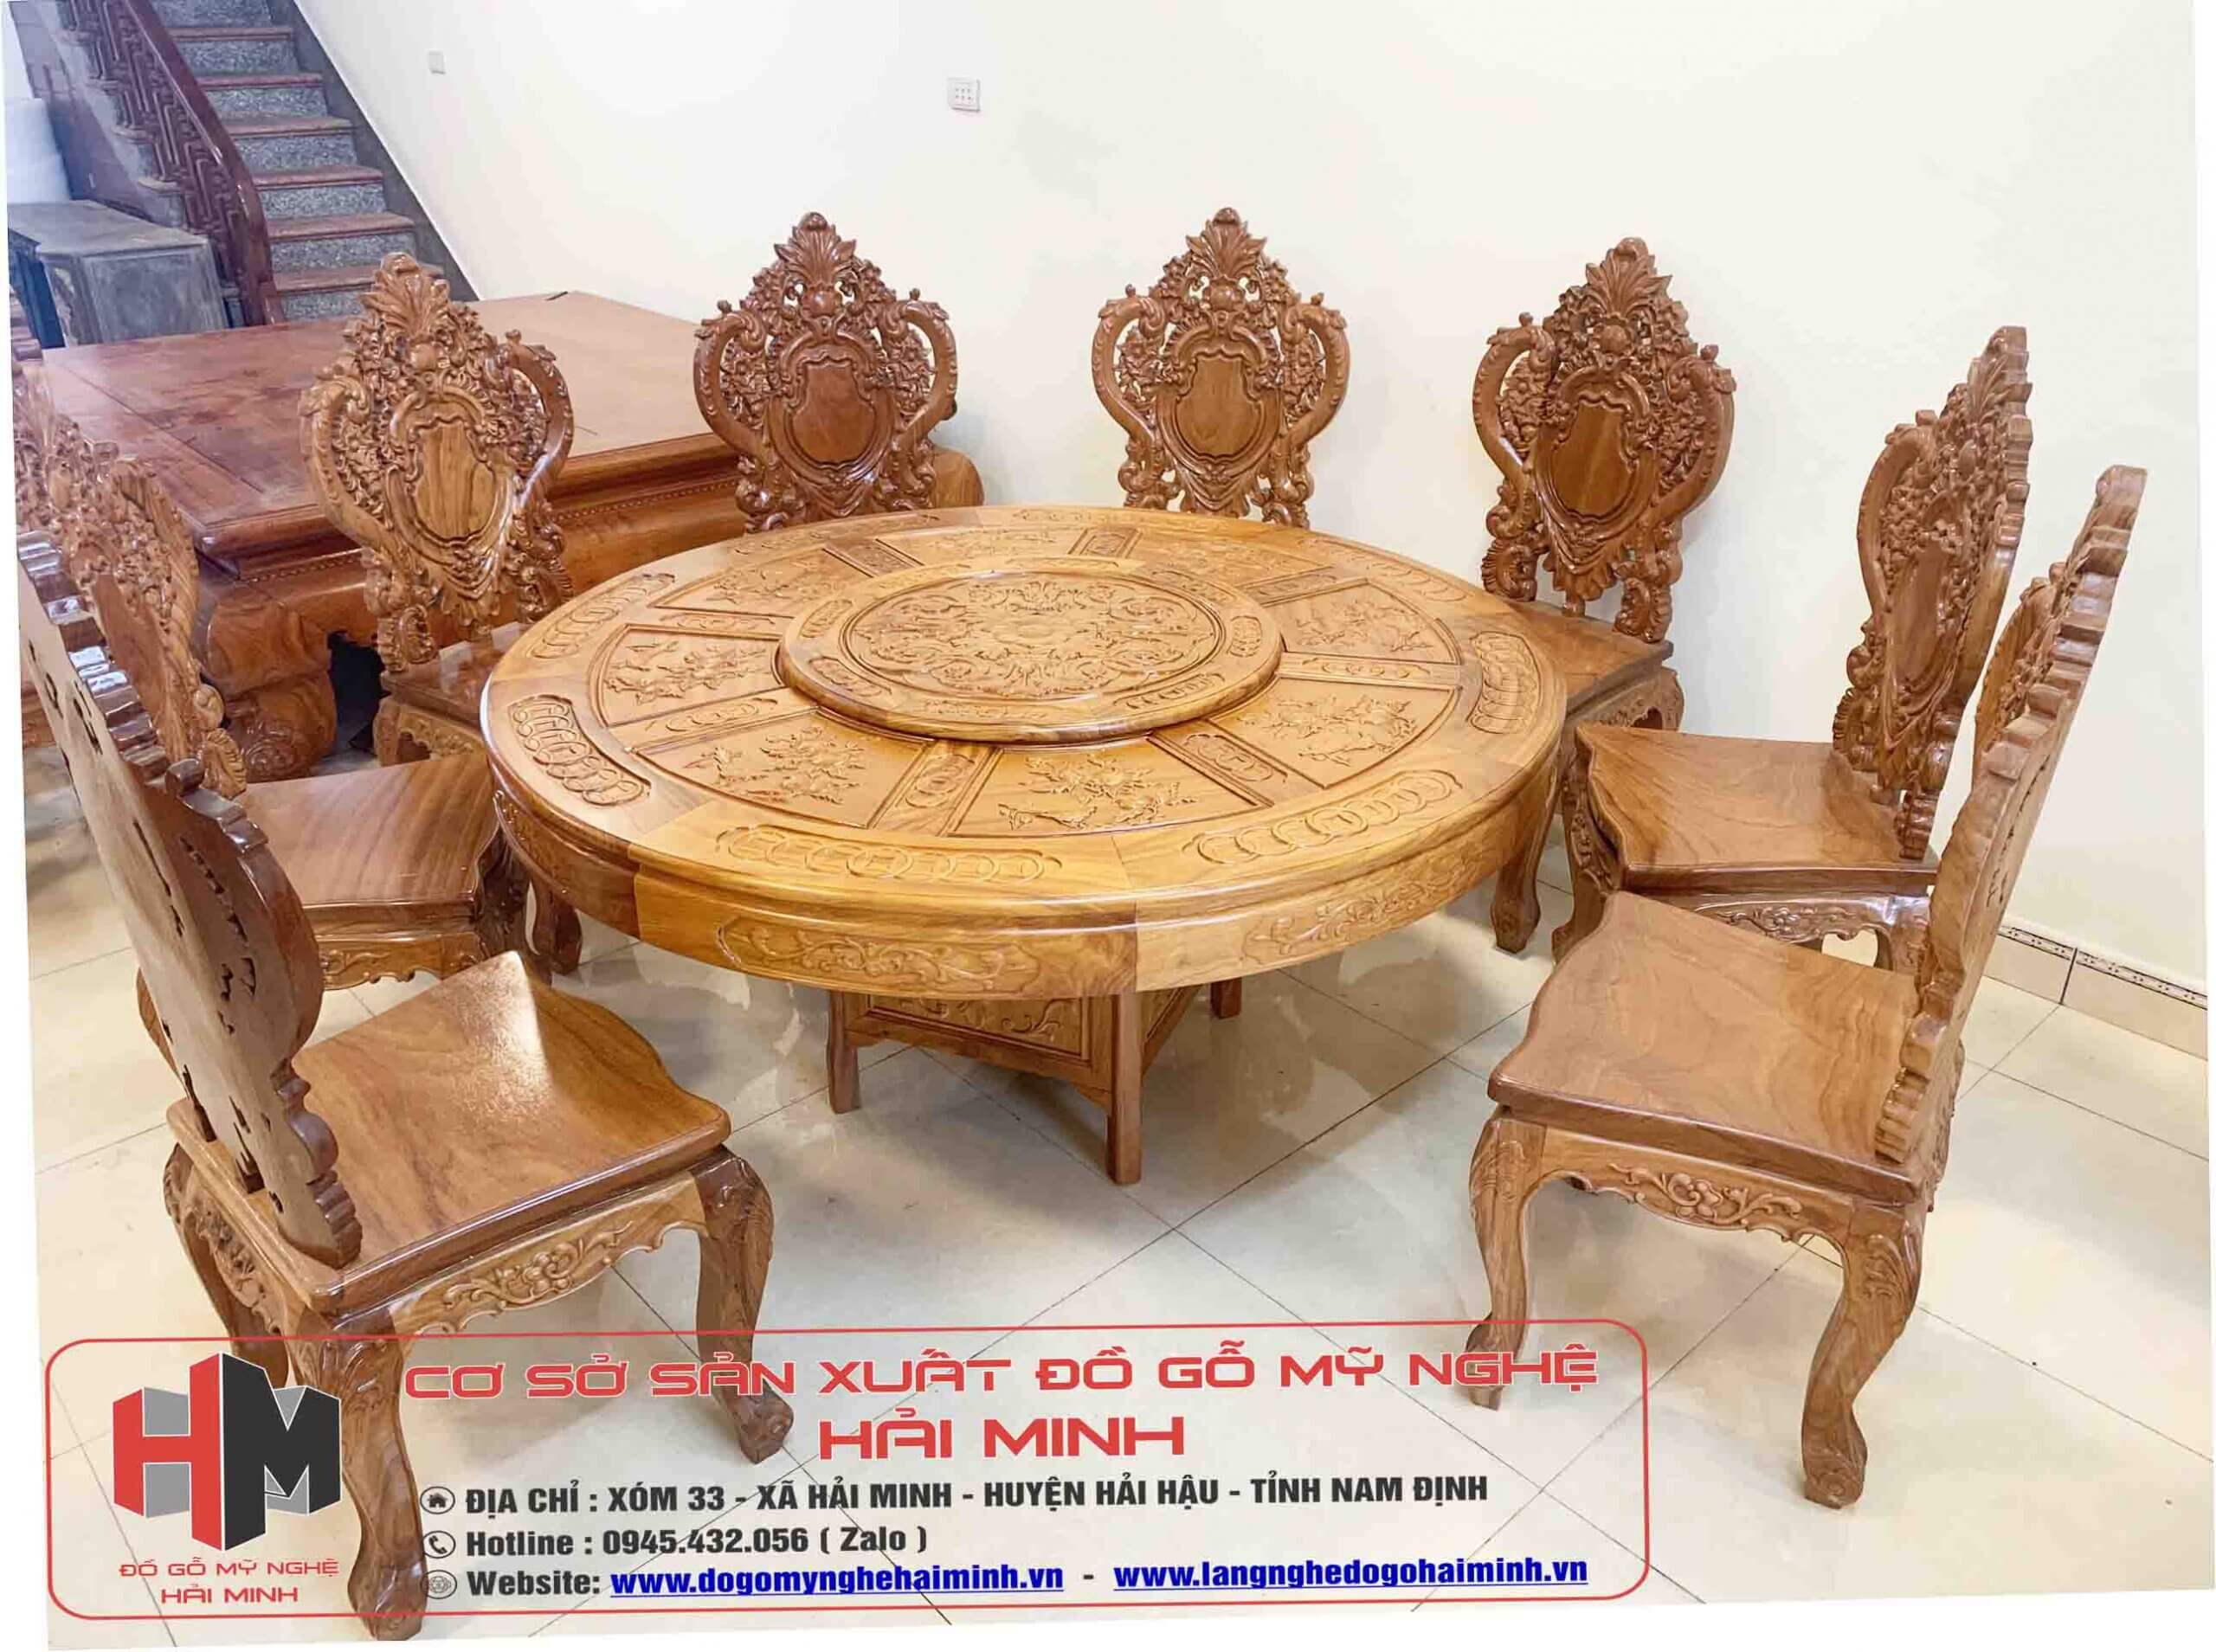 Lý do mẫu bàn ghế ăn gỗ gõ đỏ được ưa chuộng trên thị trường